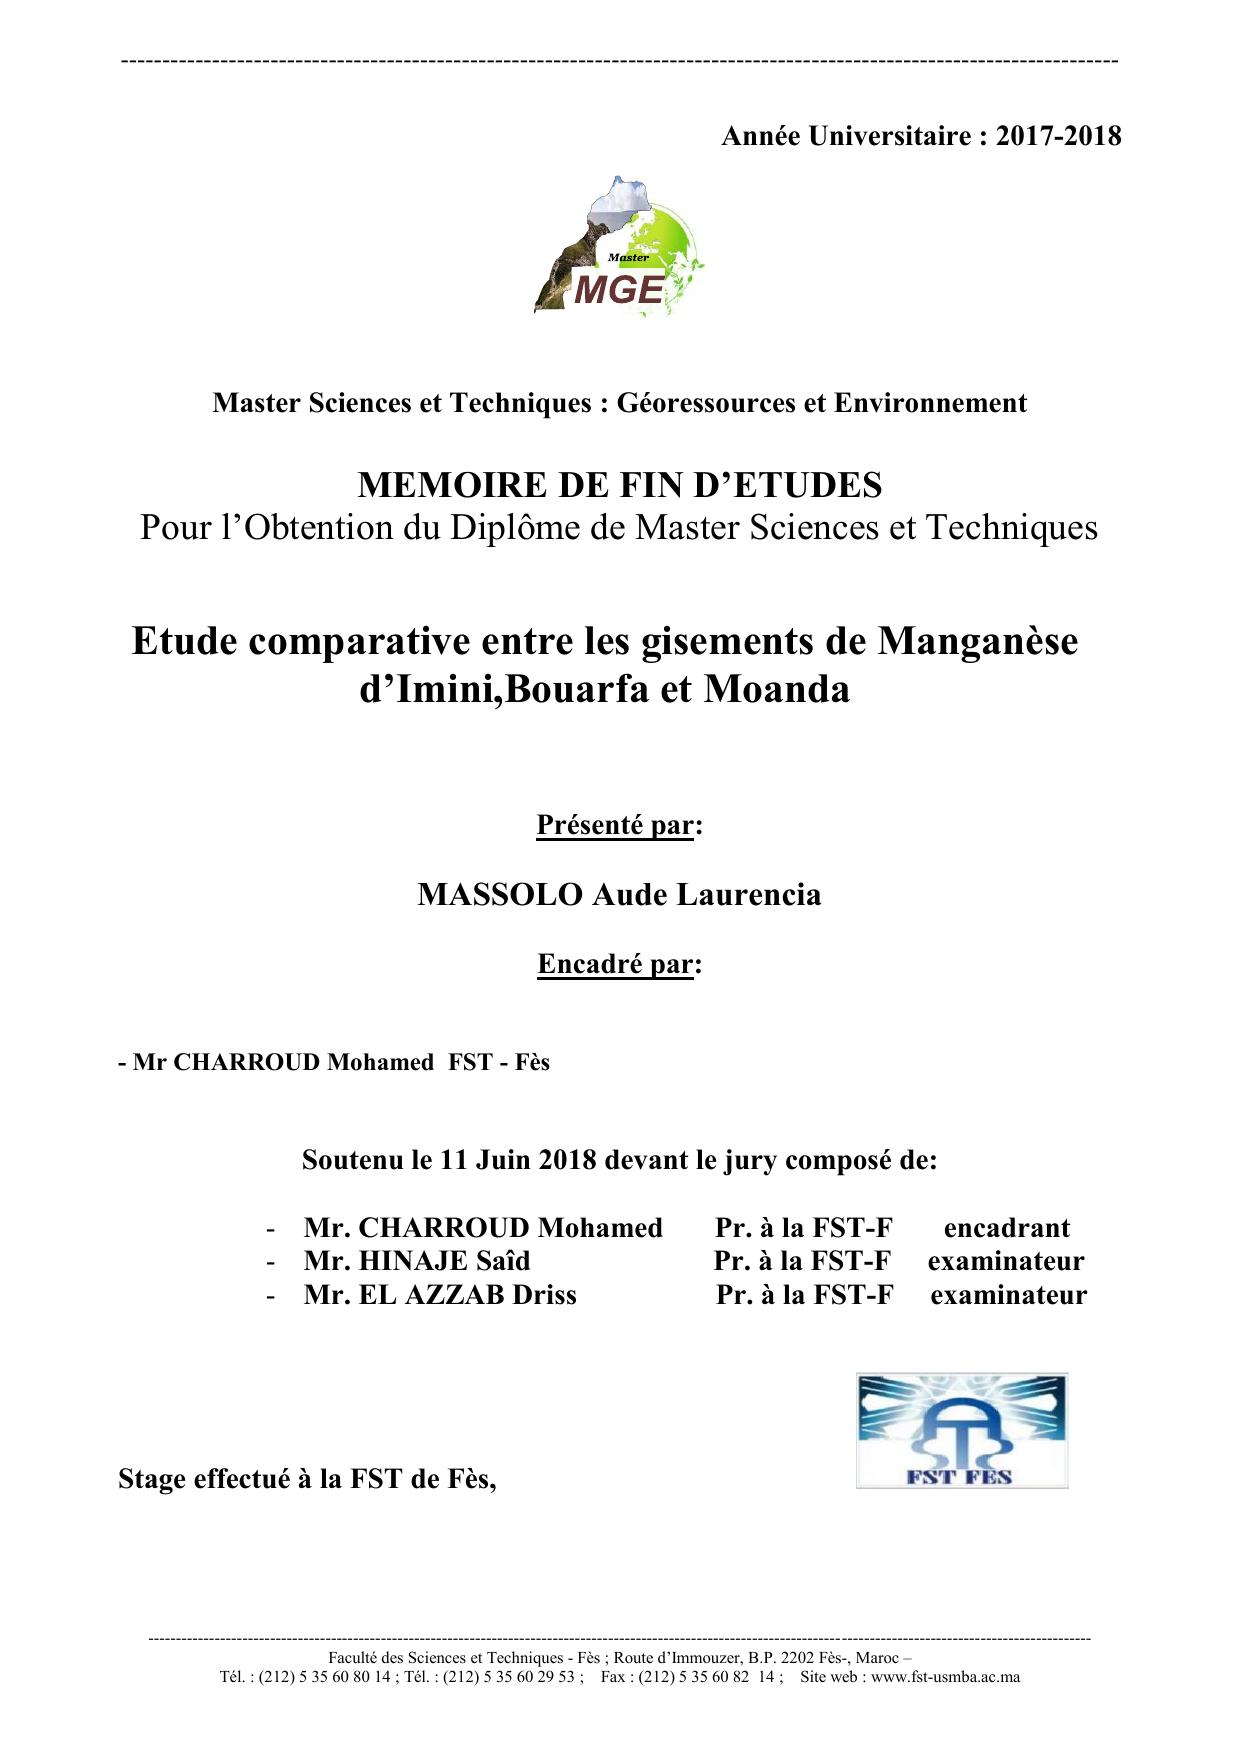 Etude comparative entre les gisements de Manganèse d’Imini,Bouarfa et Moanda